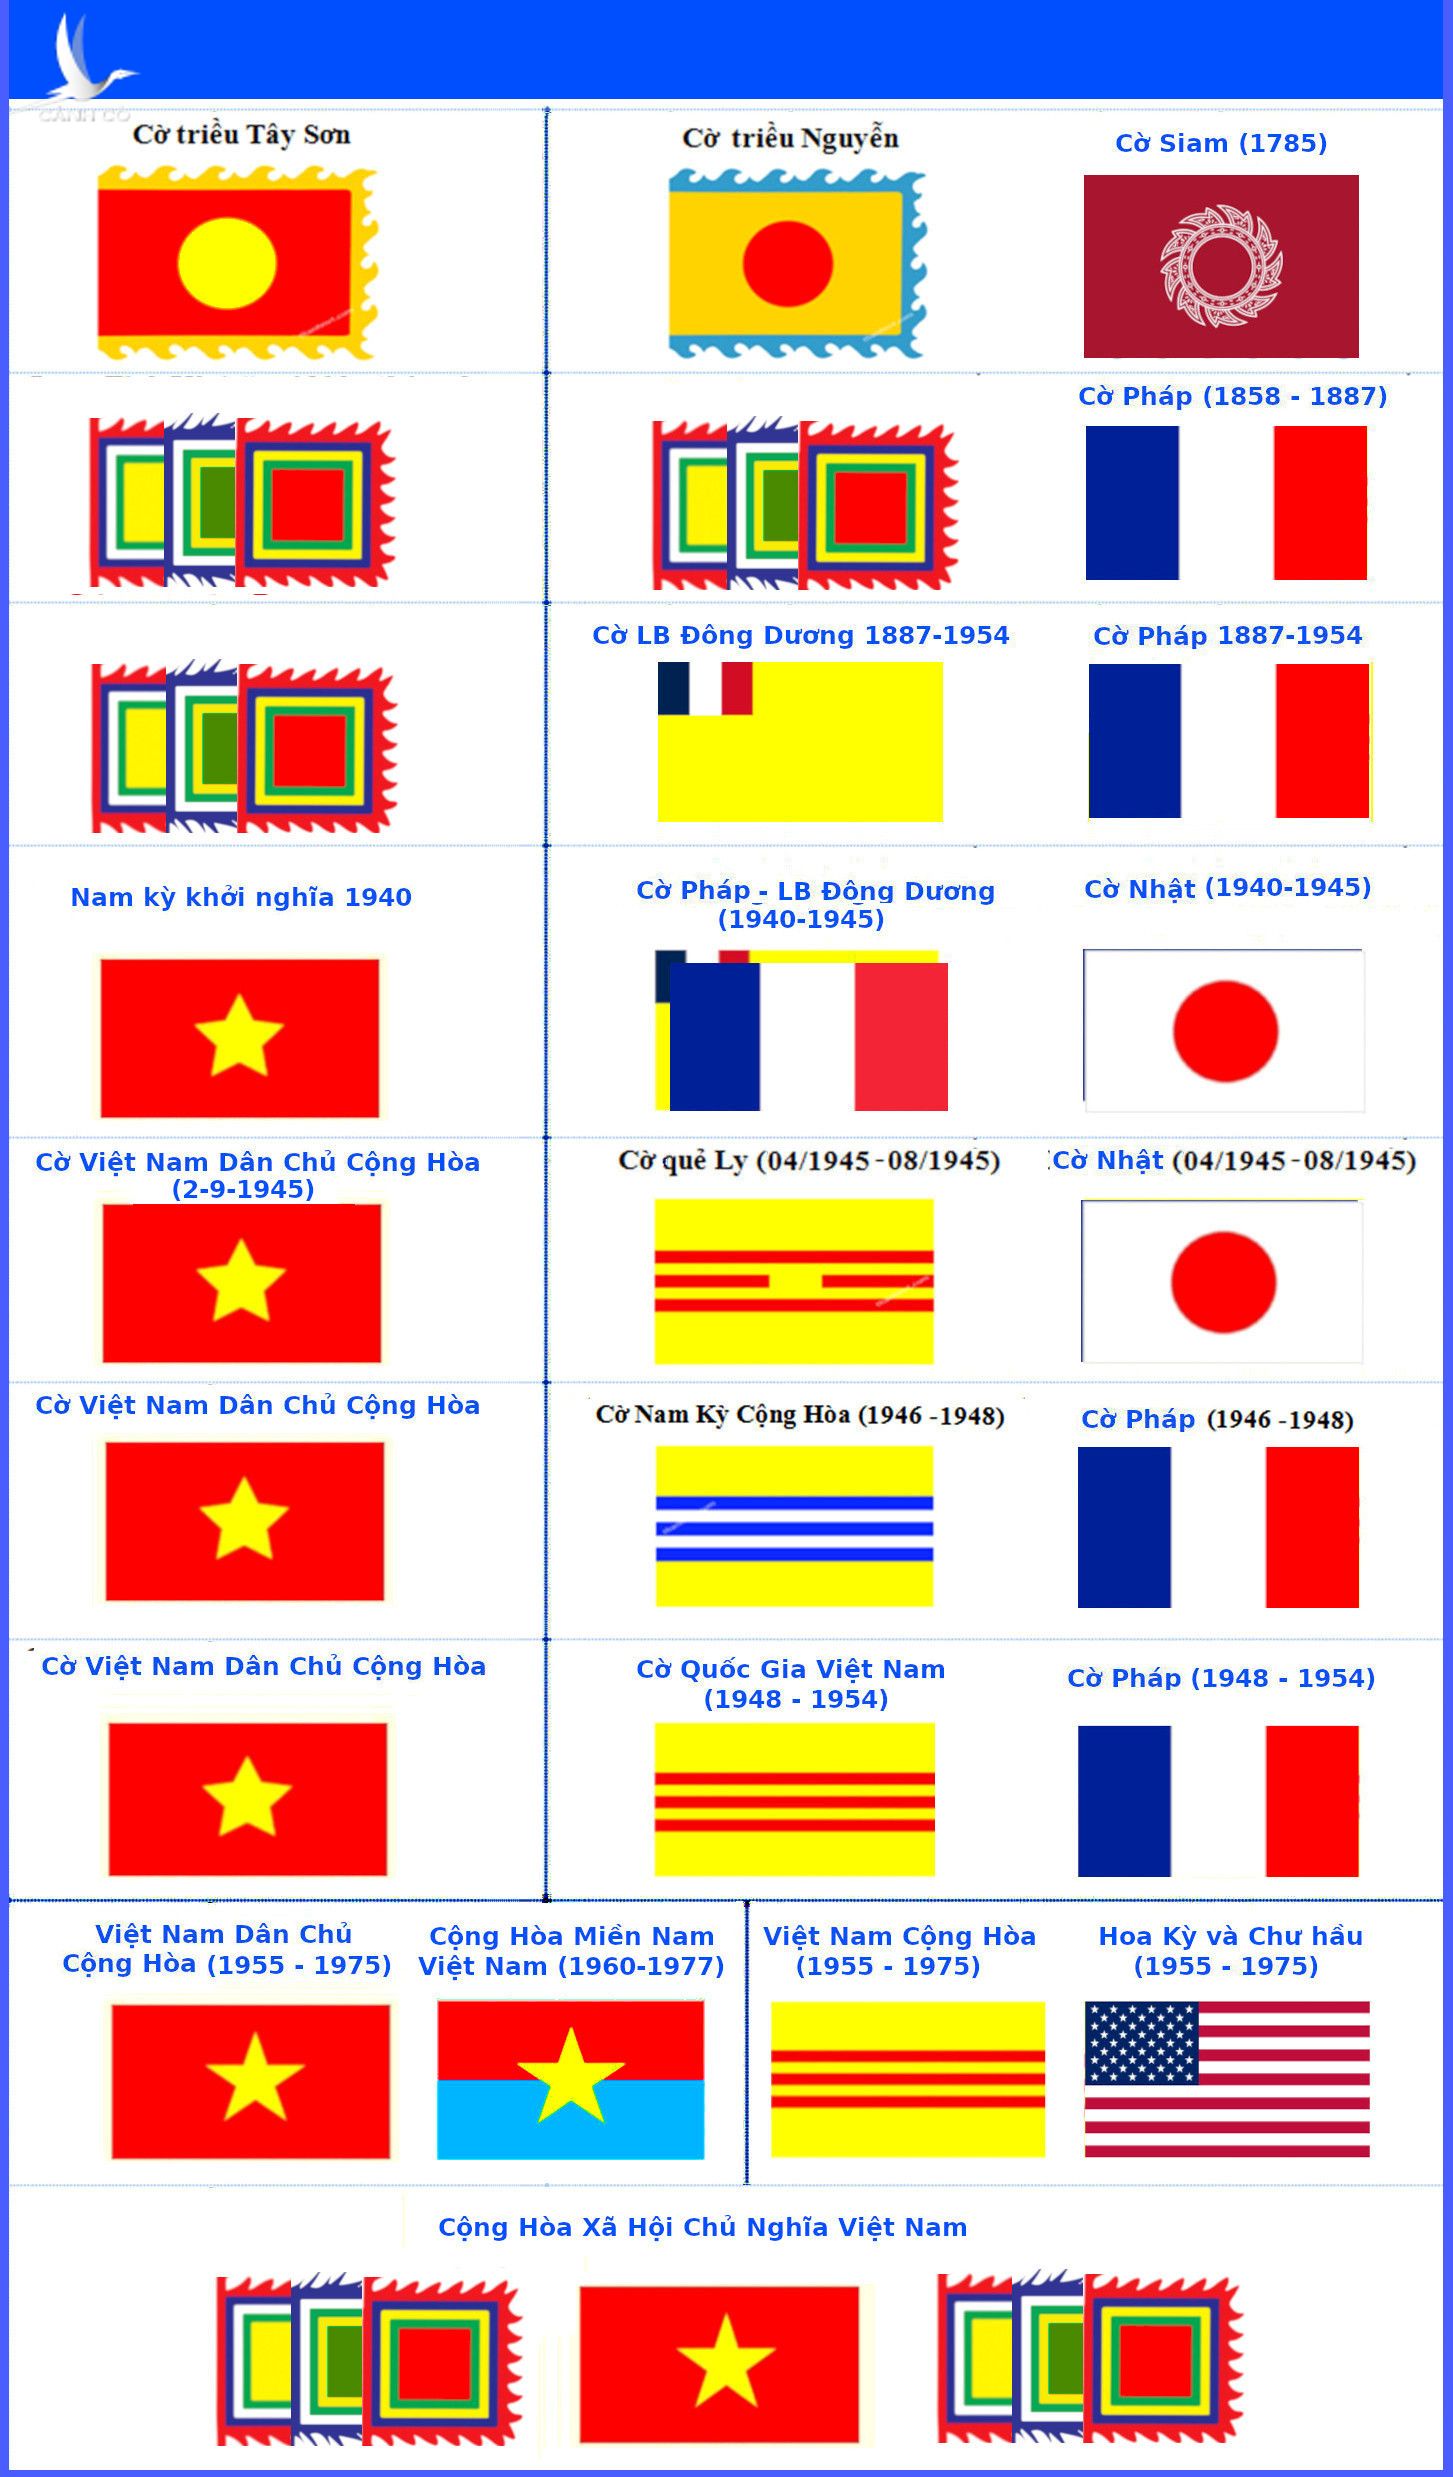 Cờ vàng ba sọc đỏ: Cờ vàng ba sọc đỏ là biểu tượng về quyết tâm và sự đoàn kết của nhân dân Việt Nam. Với thiết kế đơn giản nhưng ý nghĩa sâu sắc, cờ đỏ sao vàng đã gắn bó với lịch sử và tâm hồn của người Việt. Hãy cùng khám phá và cảm nhận sự kiêu hãnh với biểu tượng cờ đỏ sao vàng của Việt Nam.